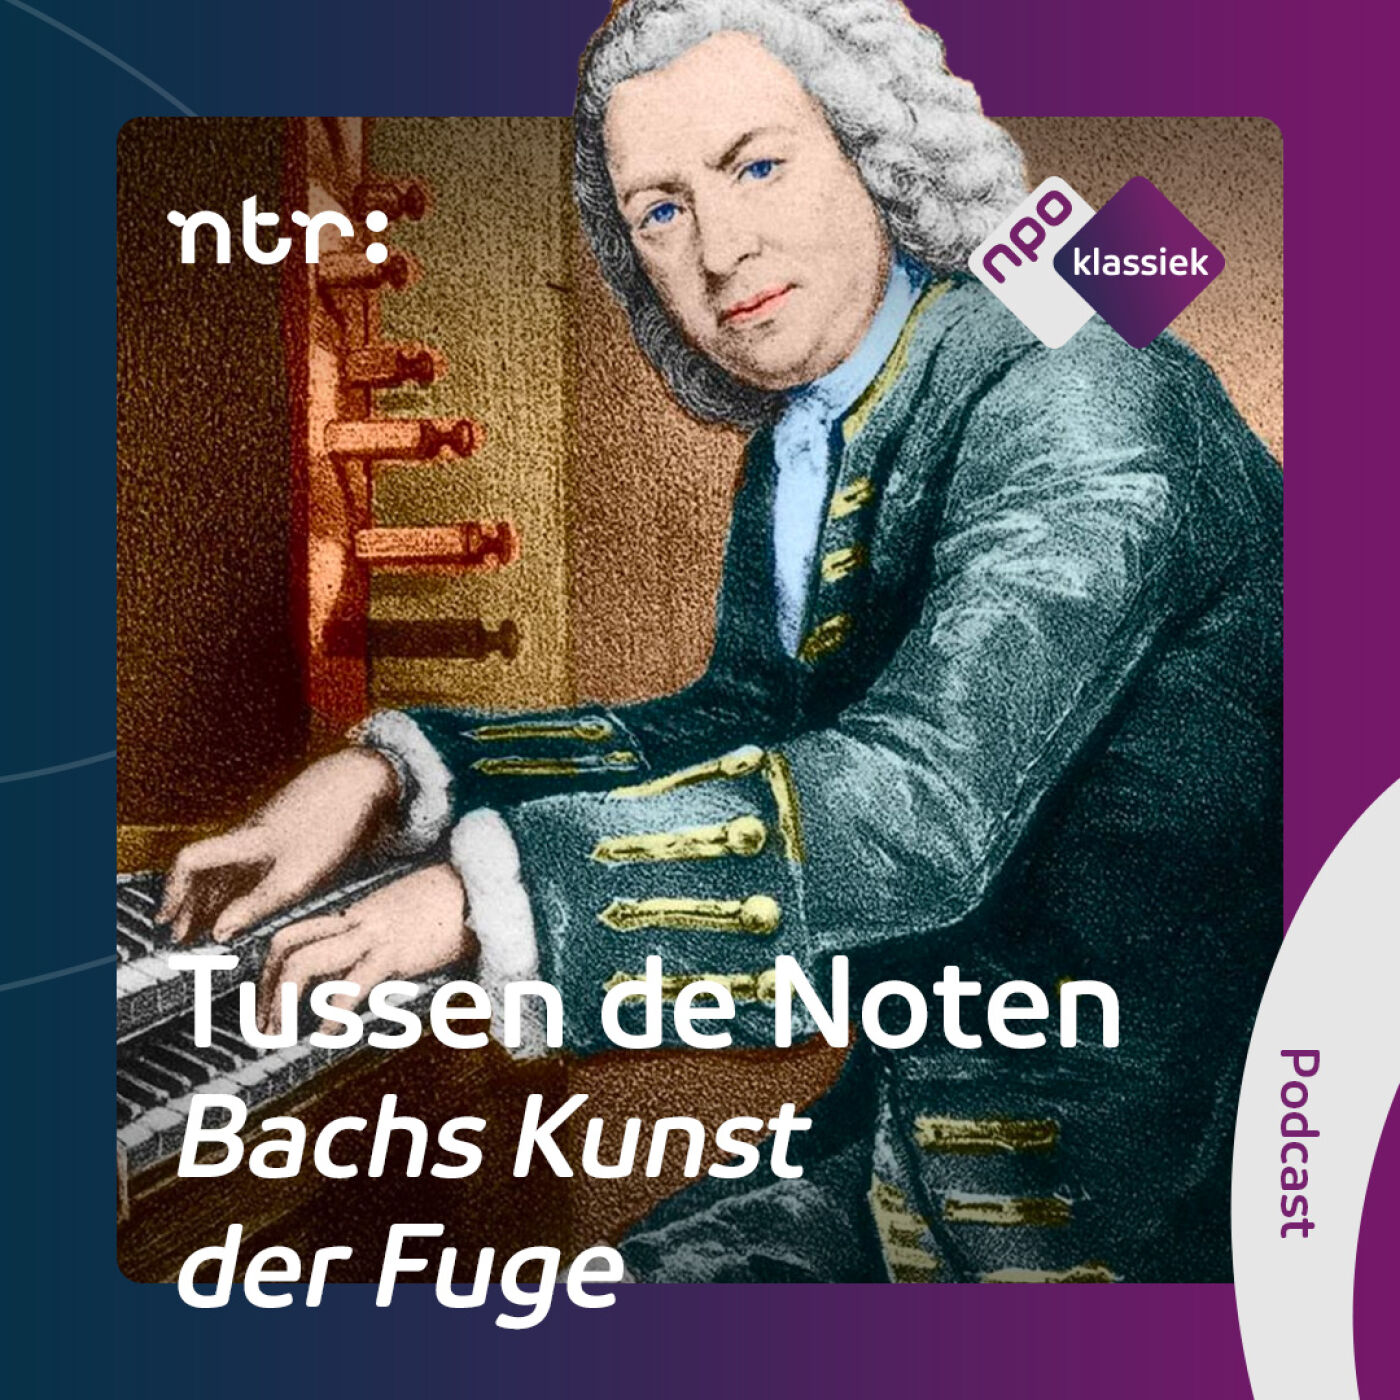 #1 - Bachs Kunst der Fuge: Het échte werk - 1. Alle begin is enkelvoudig (S04)